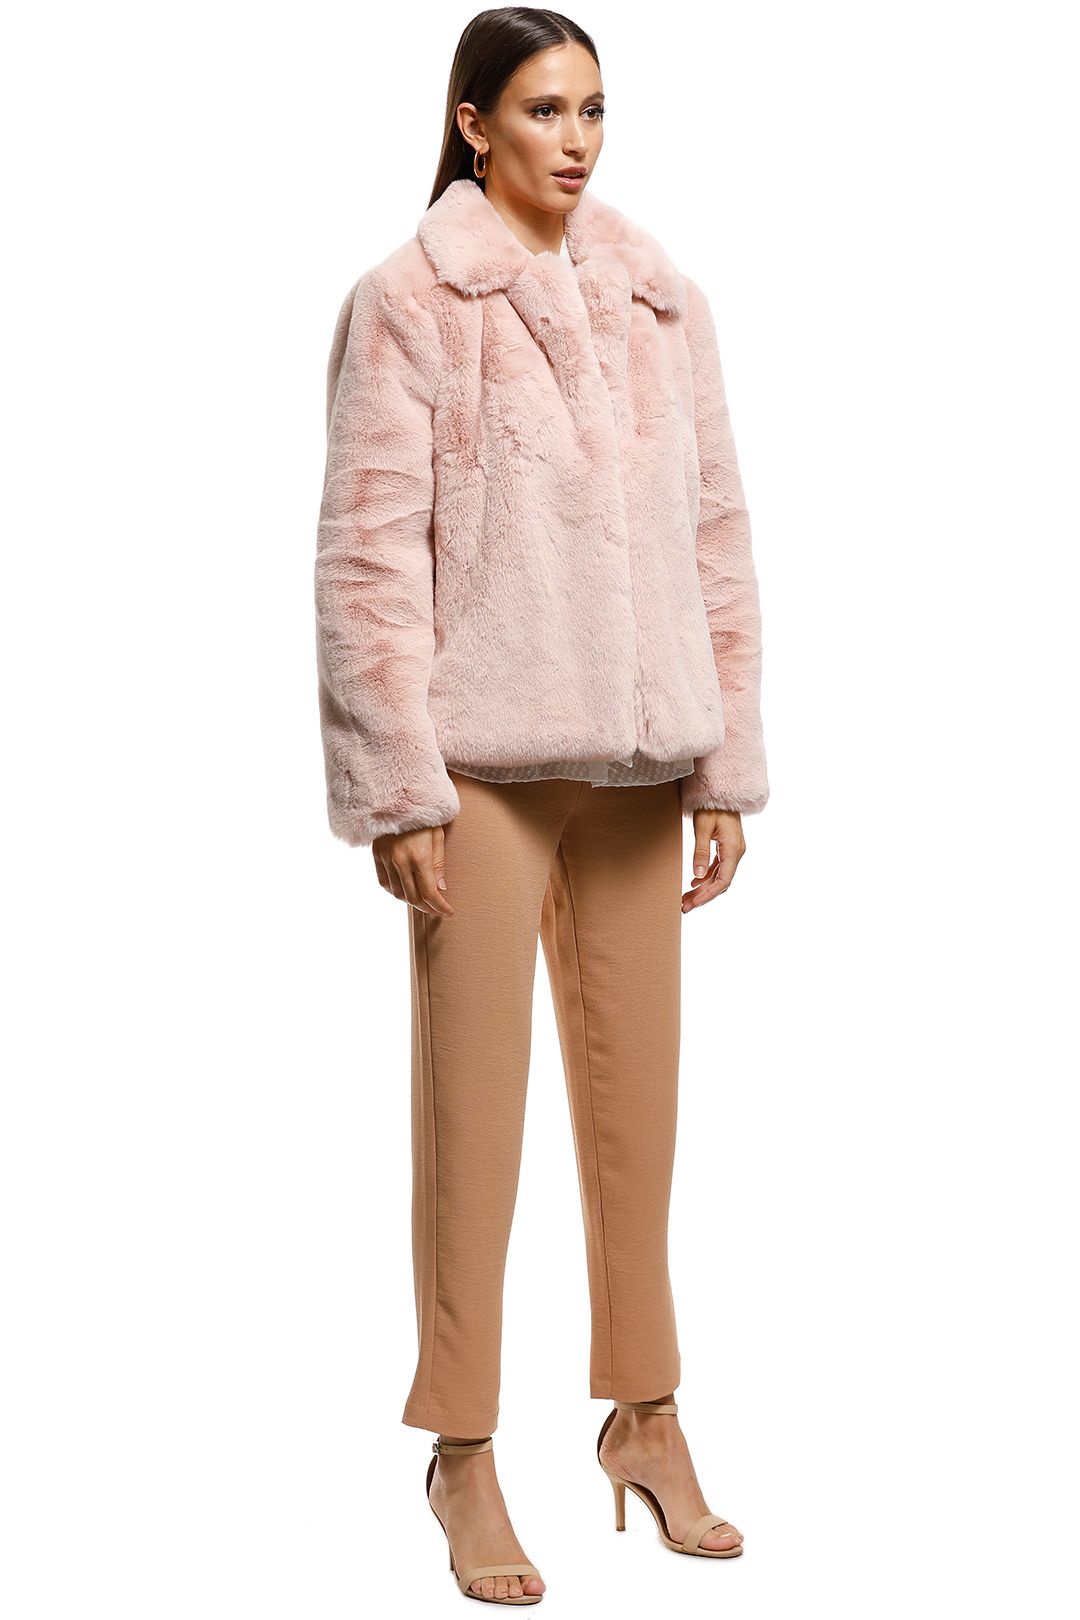 Cooper St - Blushing Fur Vest - Pink - Side